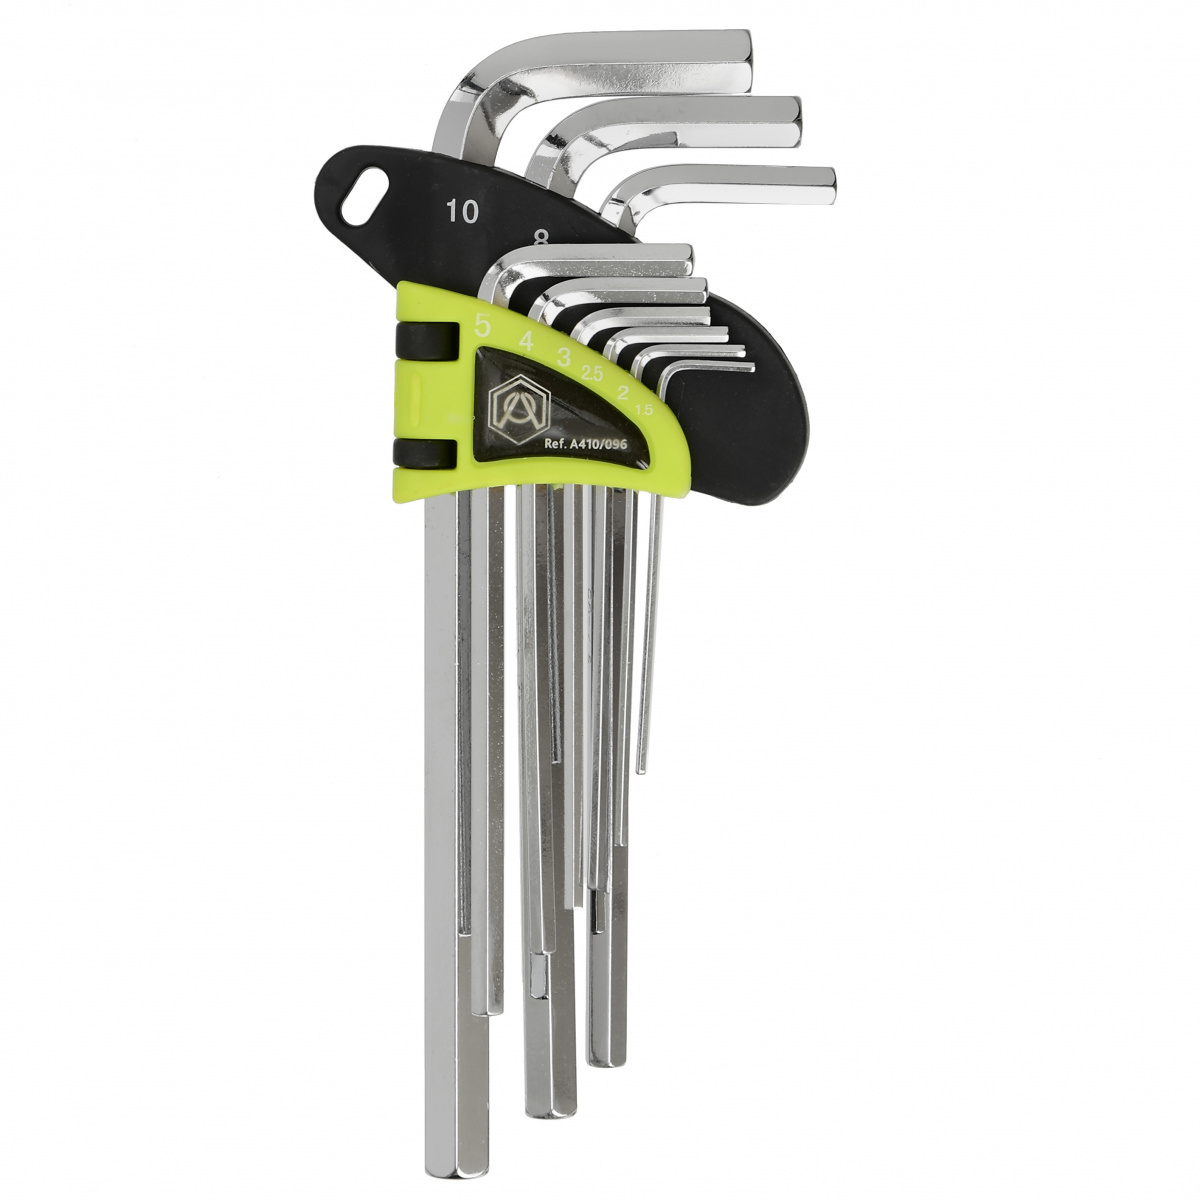 Набор шестигранных ключей 1.5-10 мм, 9 шт. Armero, A410/096, длинные